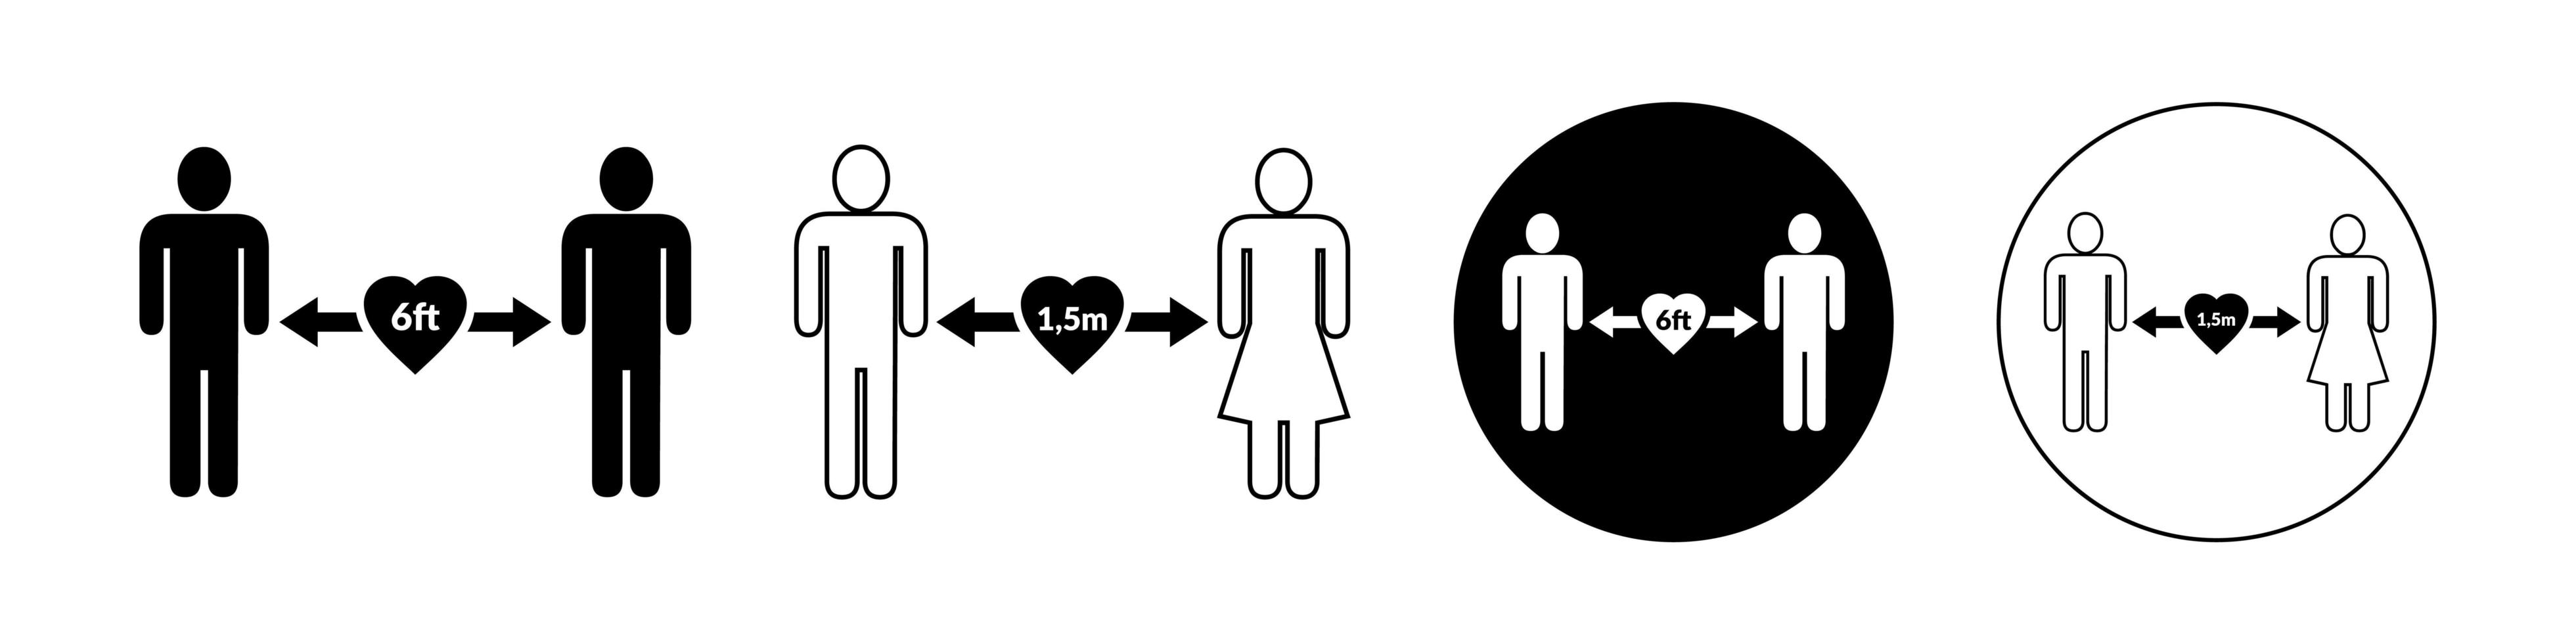 social distansering uppsättning ikoner. enkel man eller kvinna svartvita silhuetter med pilavstånd mellan. kan användas vid förebyggande av utbrott av coronavirus covid-19. vektor